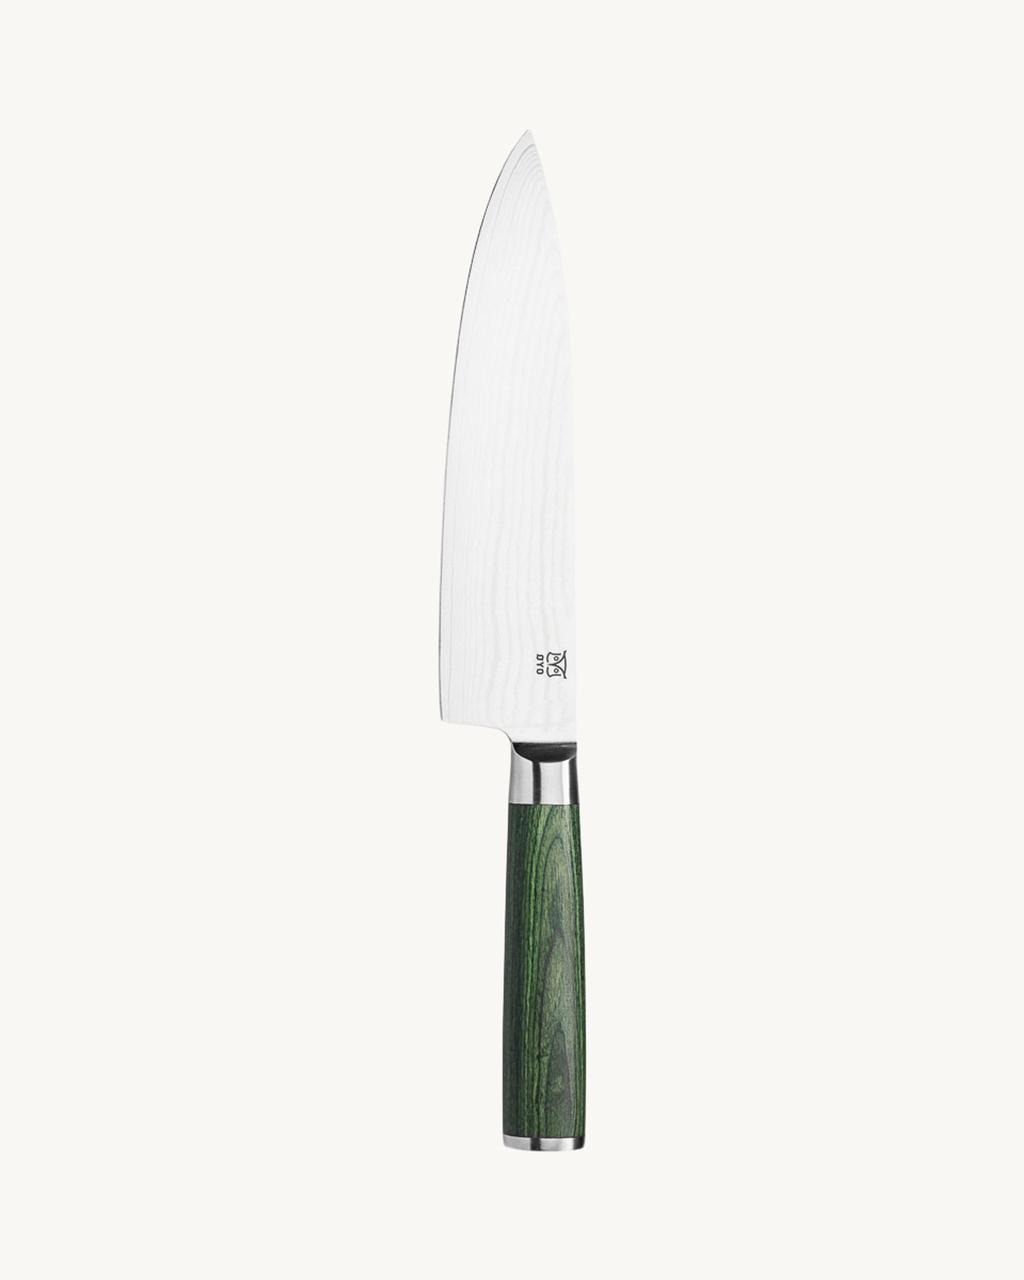 Skarvet Chef's knife